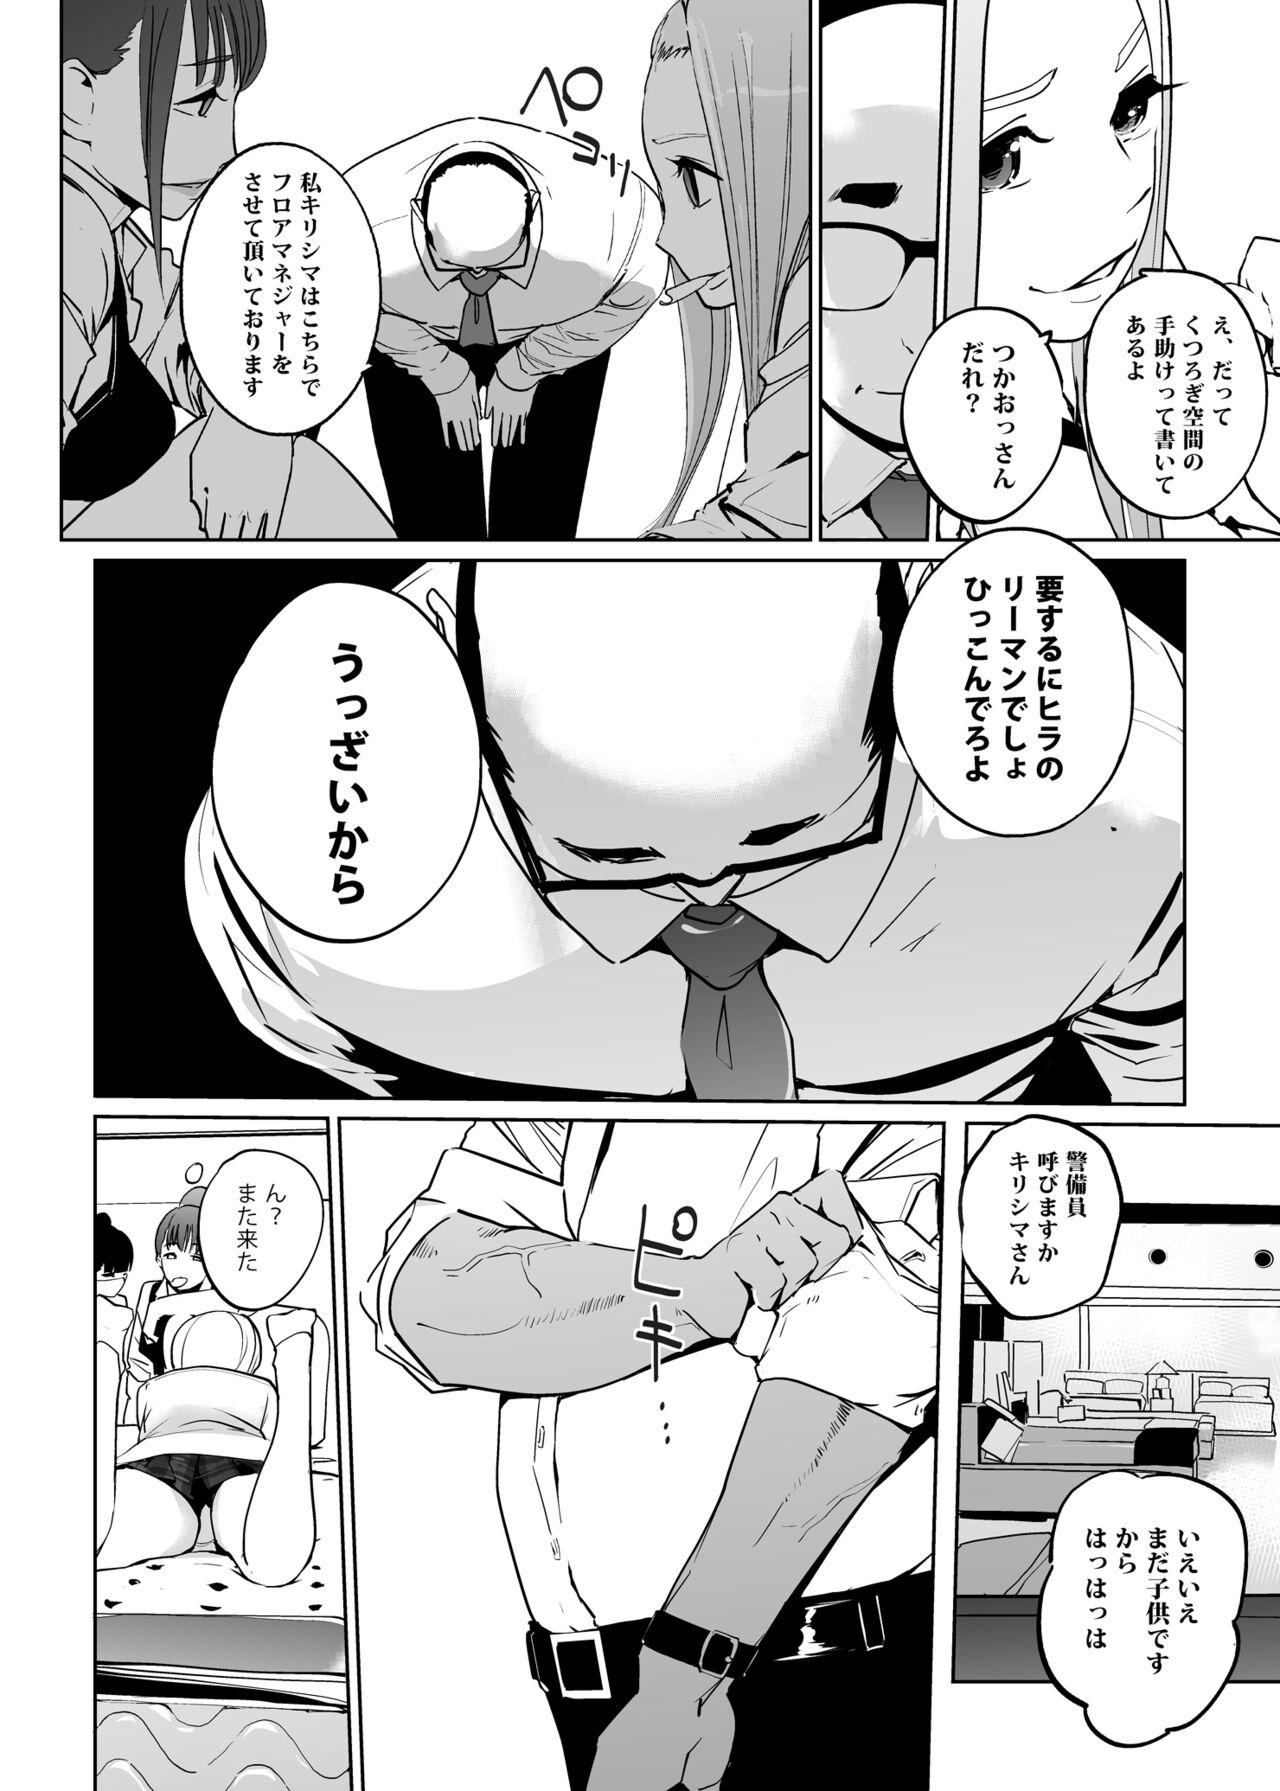 Publico NTR Nemuri Hime vol. 2 - Original Cuzinho - Page 6